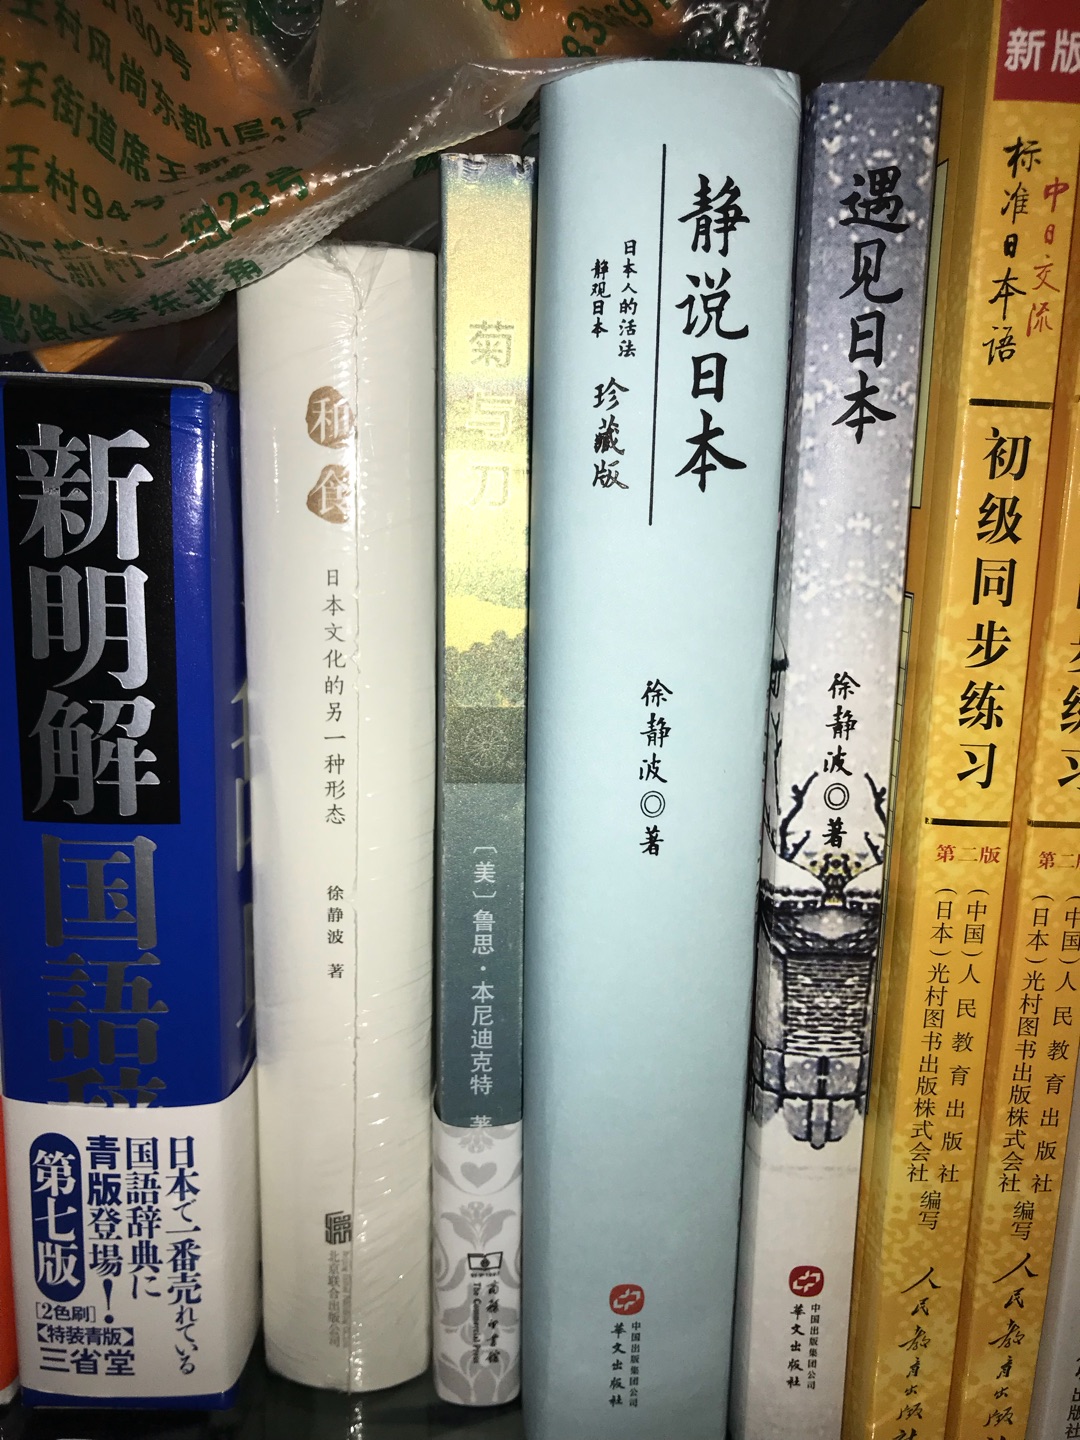 静说日本，徐静波老师的新书，了解日本社会生活，经济，历史各个方面的书，支持徐老师！！